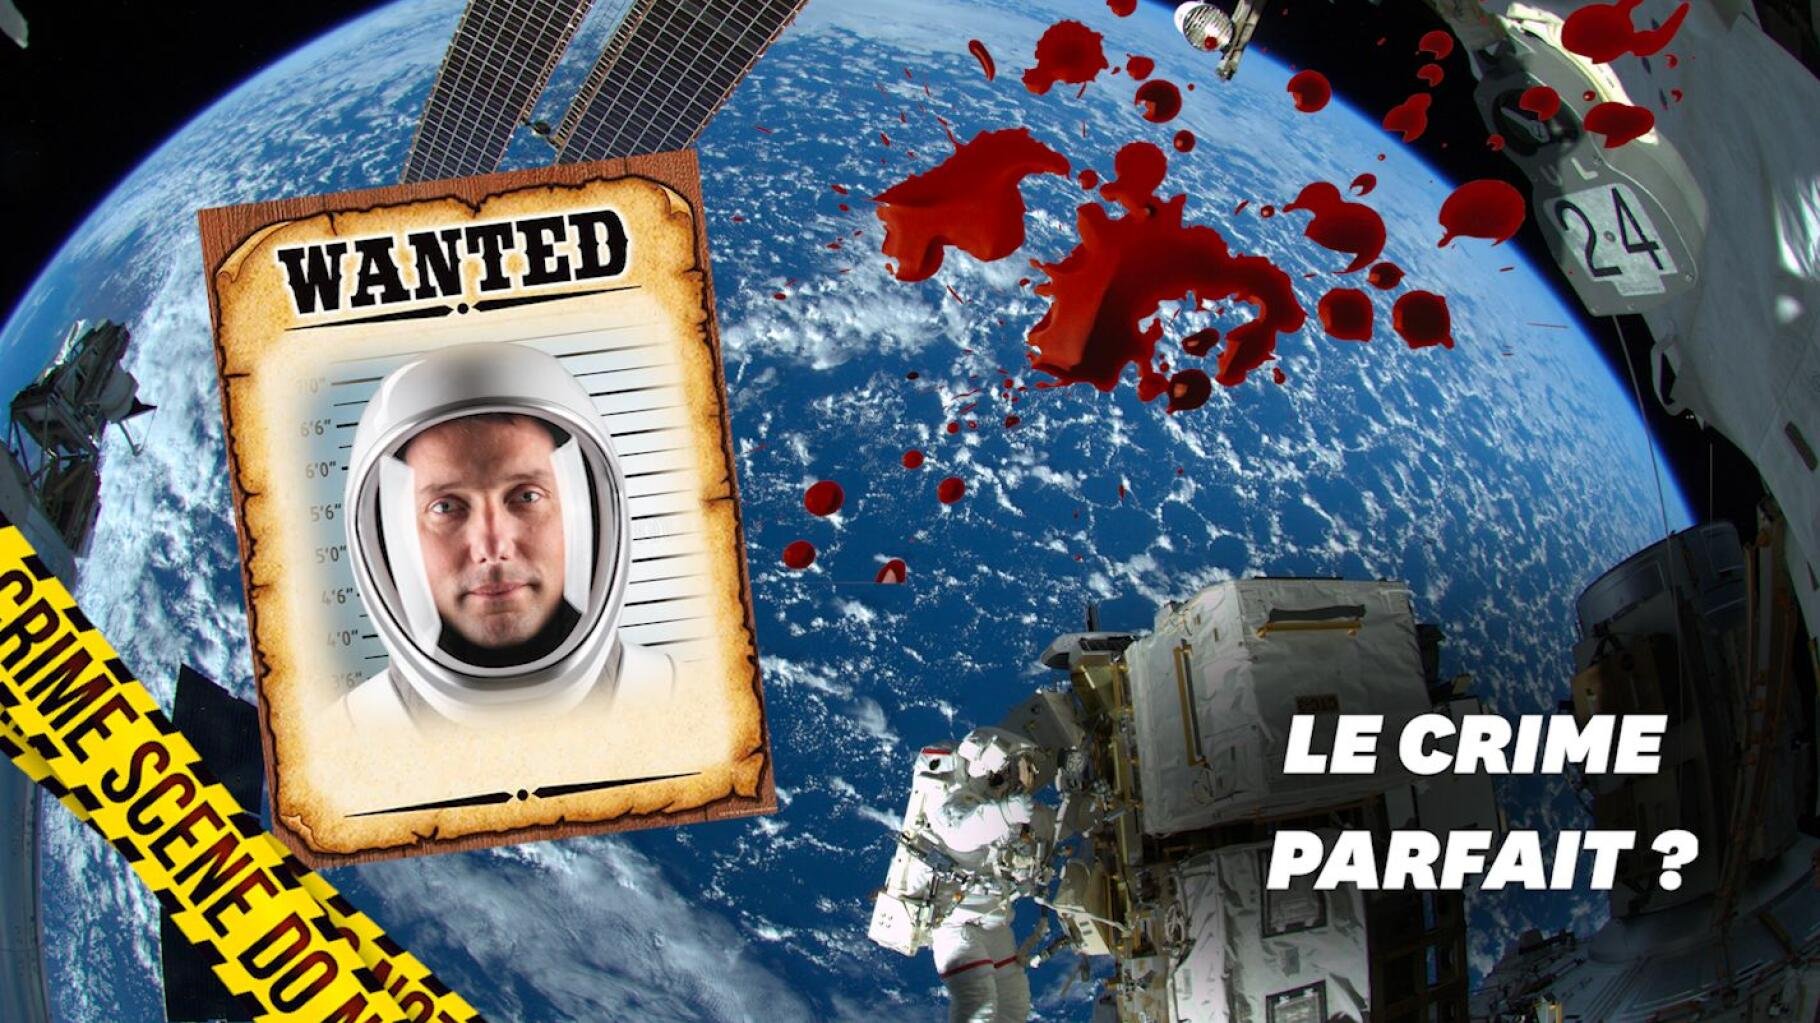 Que risque Thomas Pesquet s'il commet un crime dans l'espace?